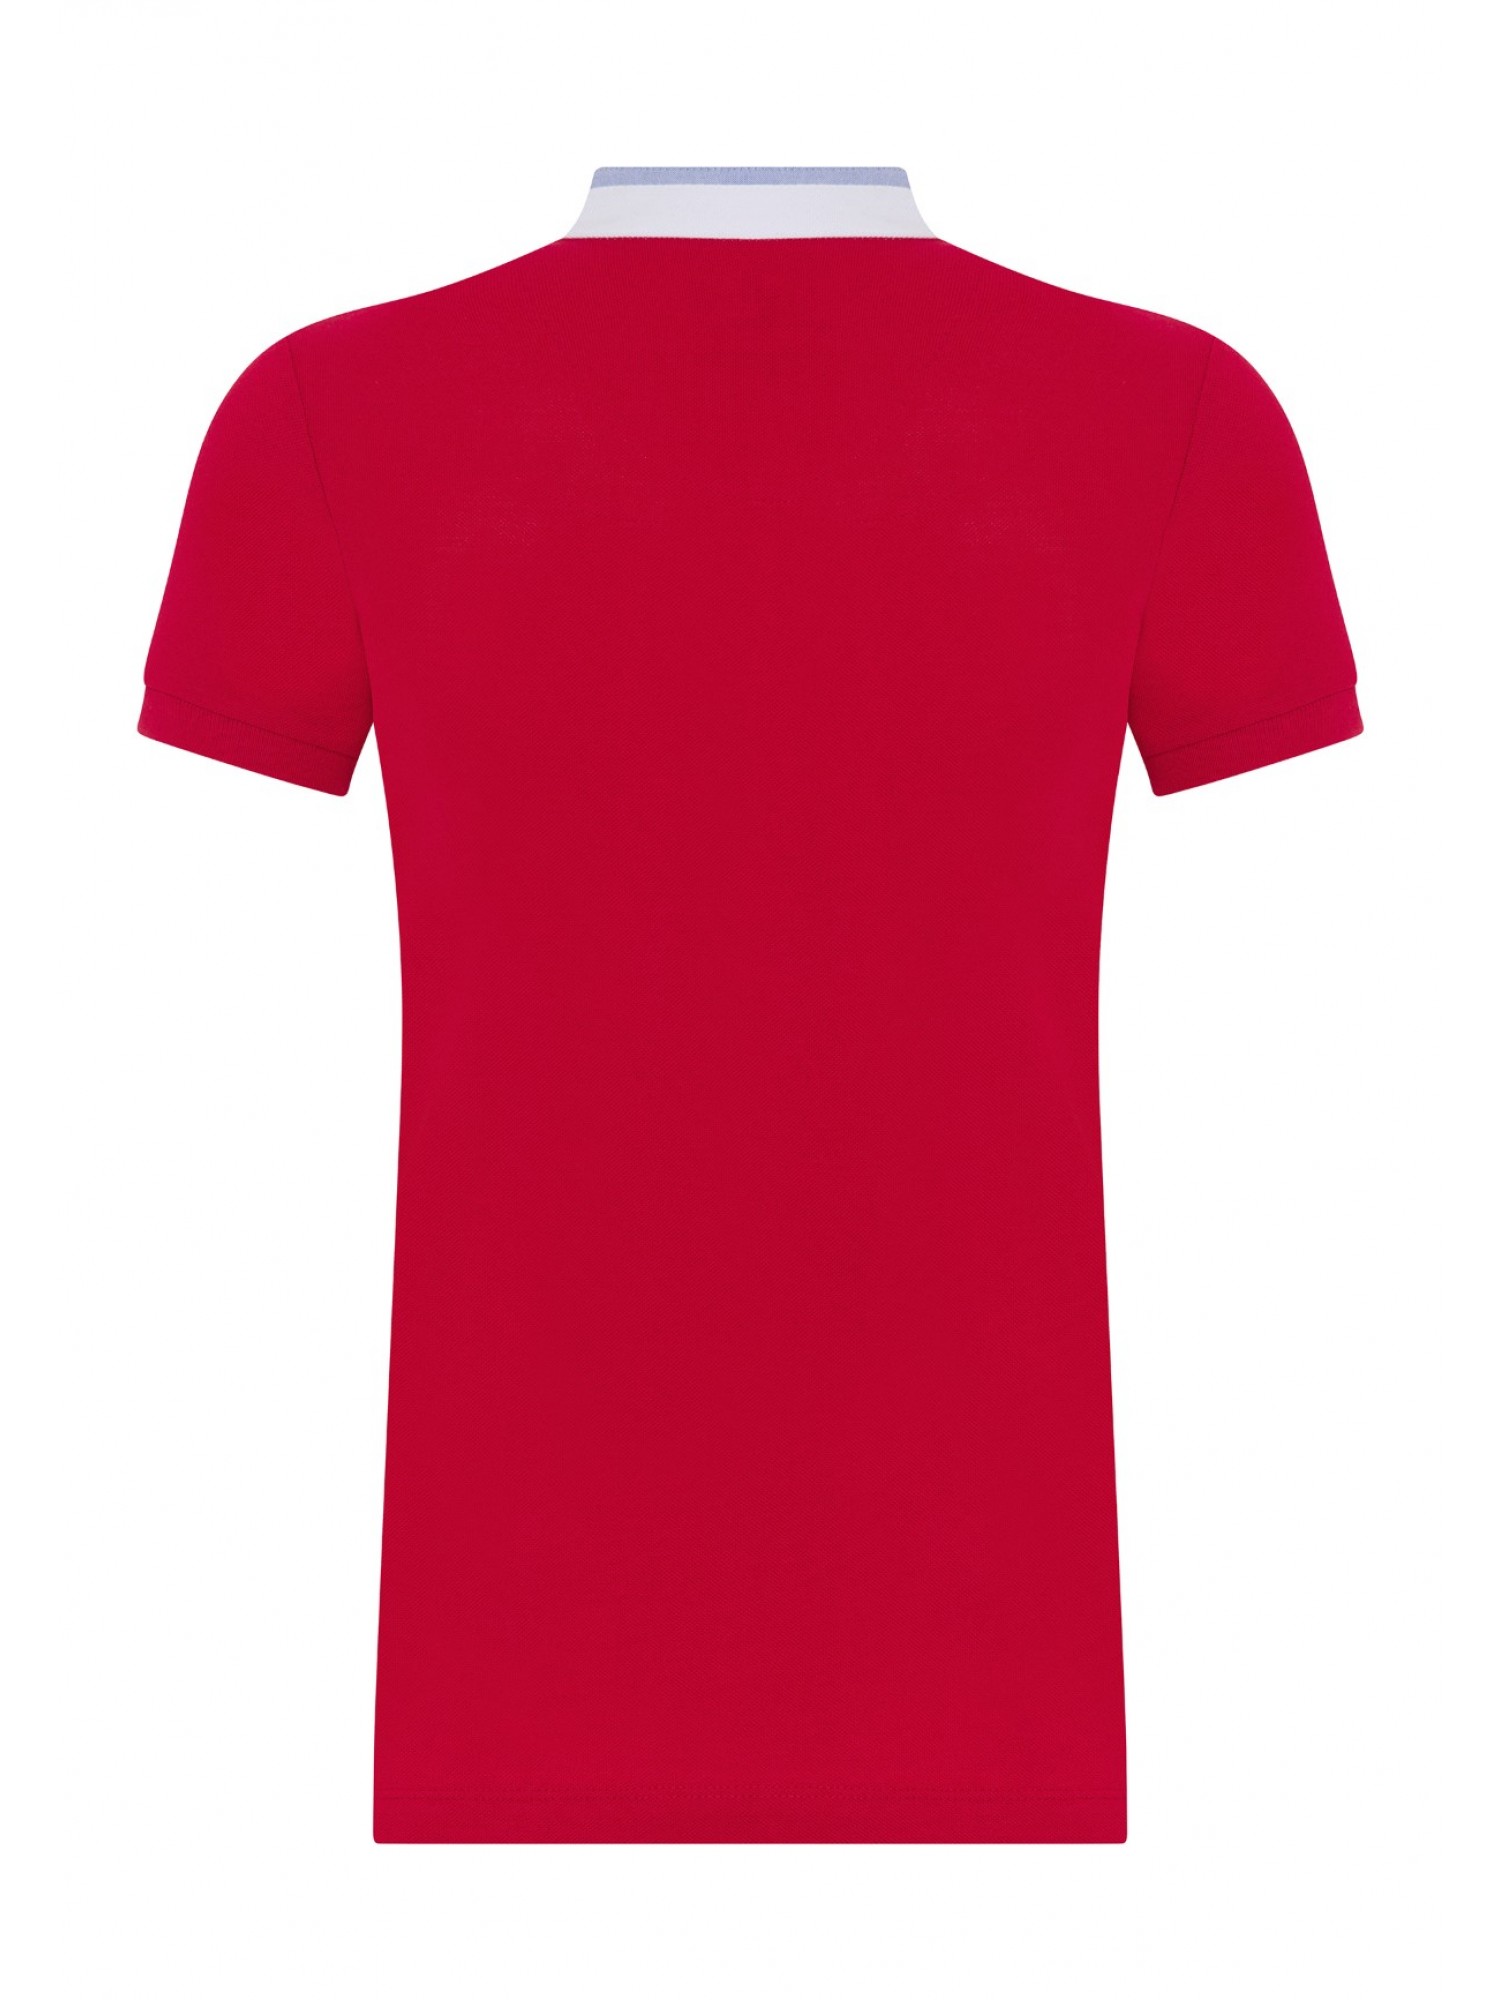 Womens Pique T-Shirt Rot B10565006R